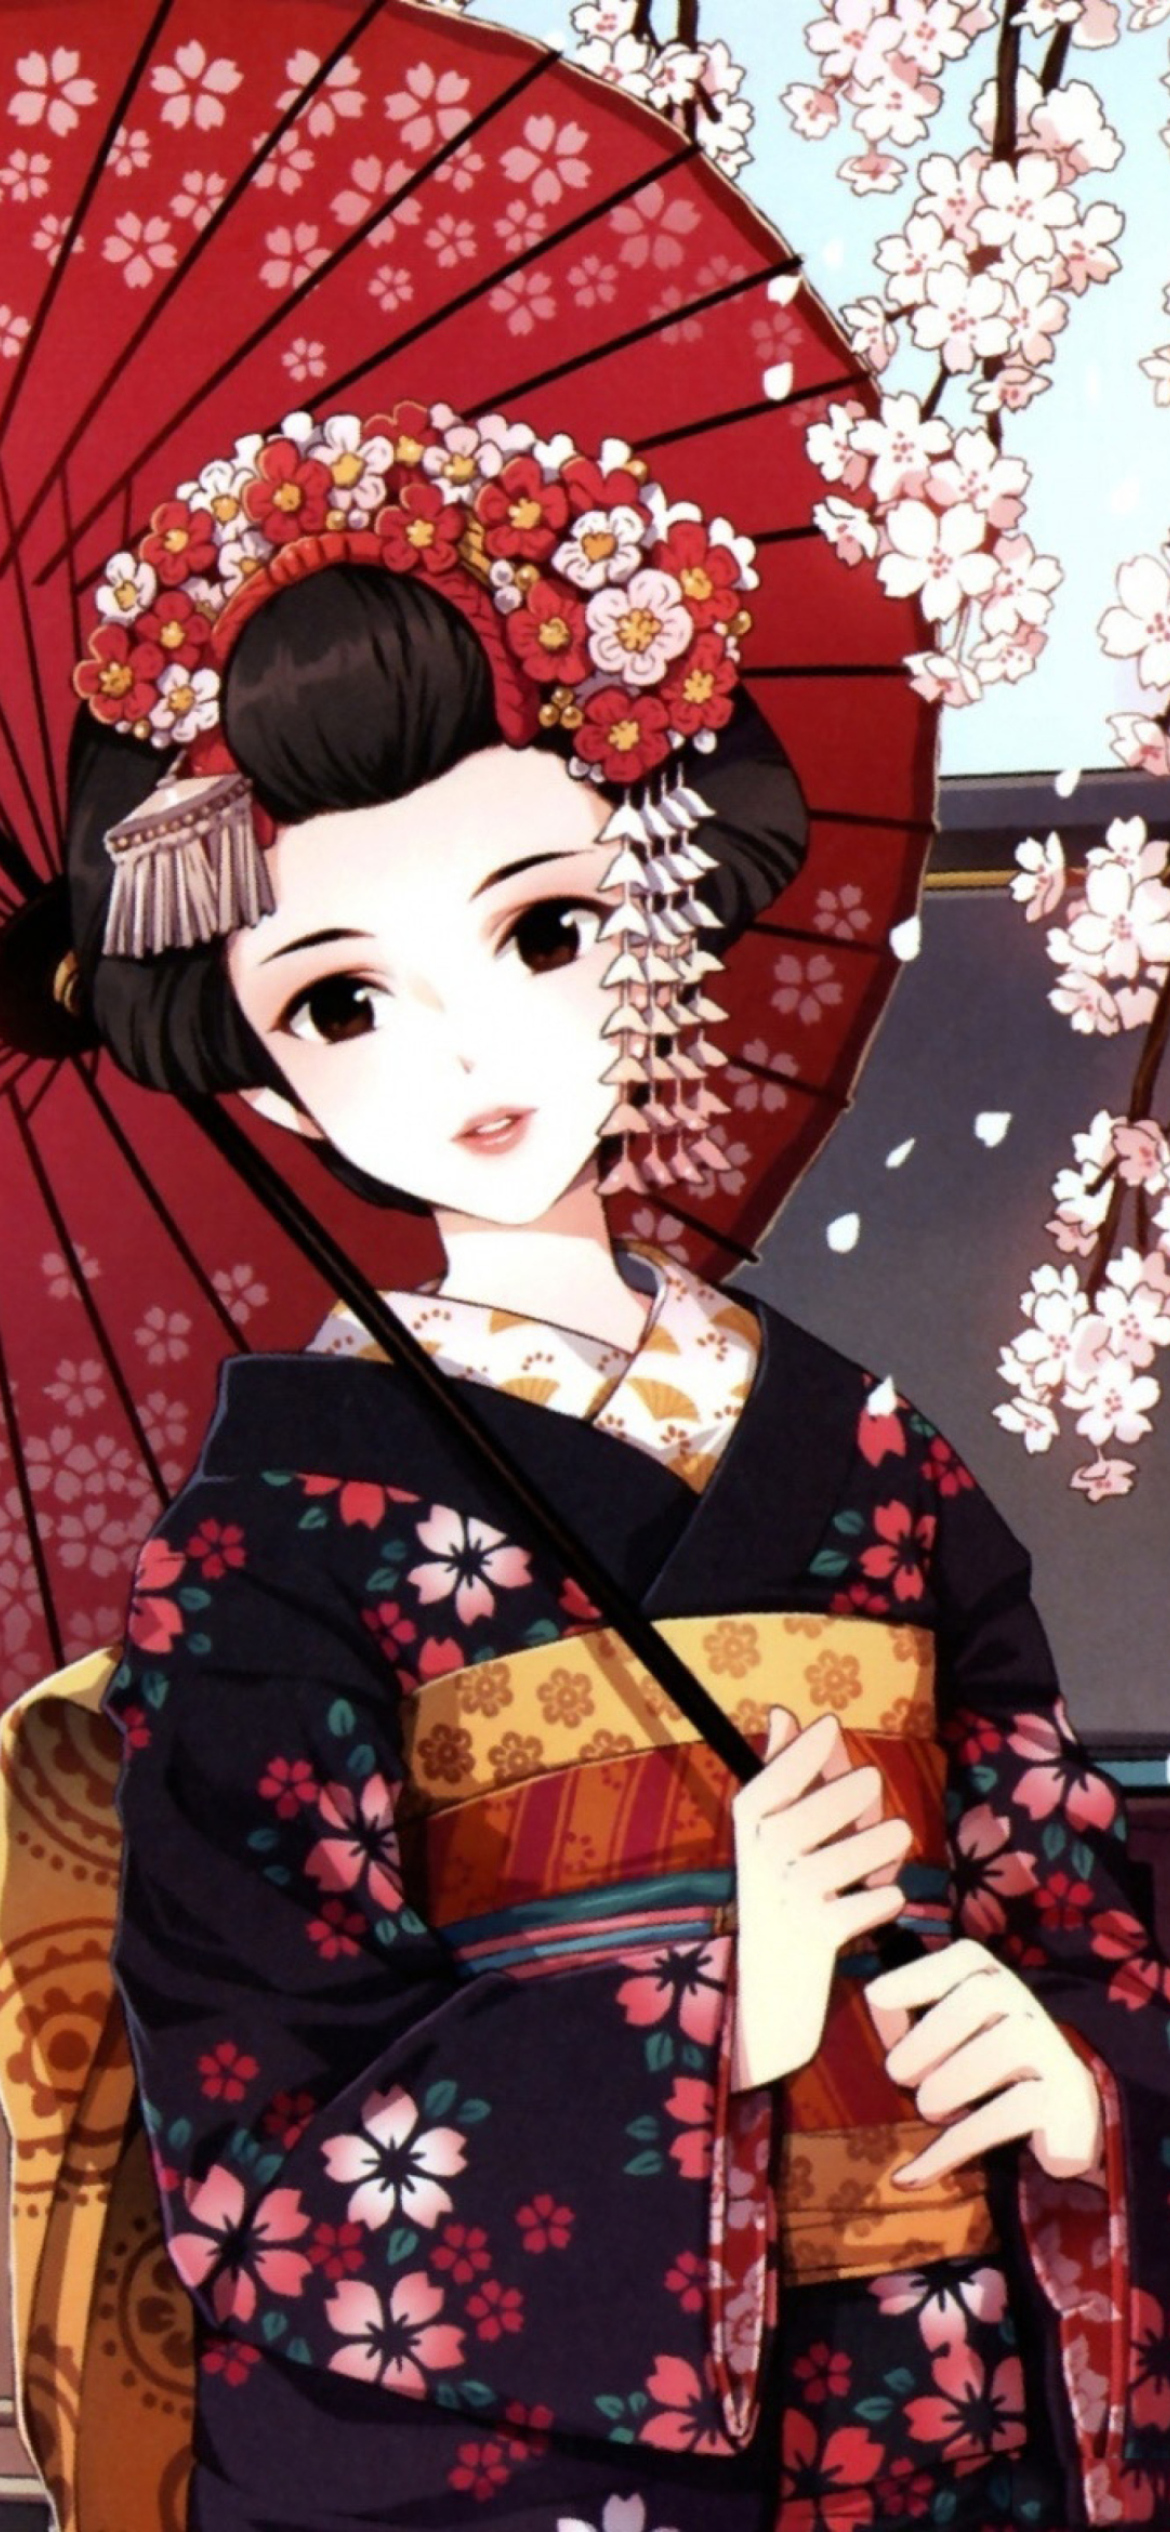 Das Japanese Girl With Umbrella Wallpaper 1170x2532